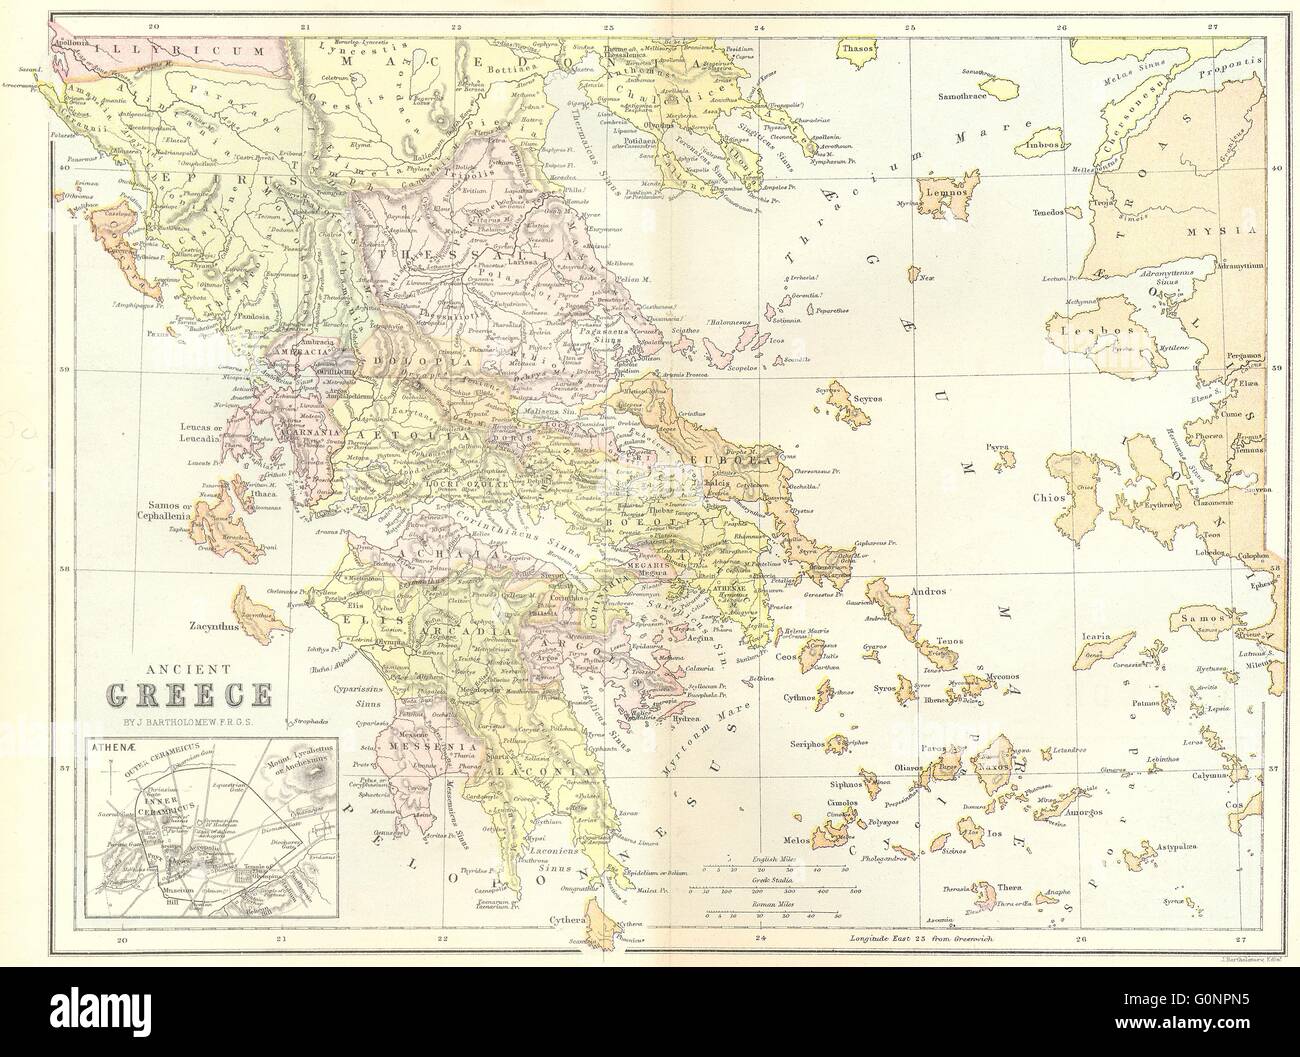 La Grèce antique, 1870 : carte antique Banque D'Images